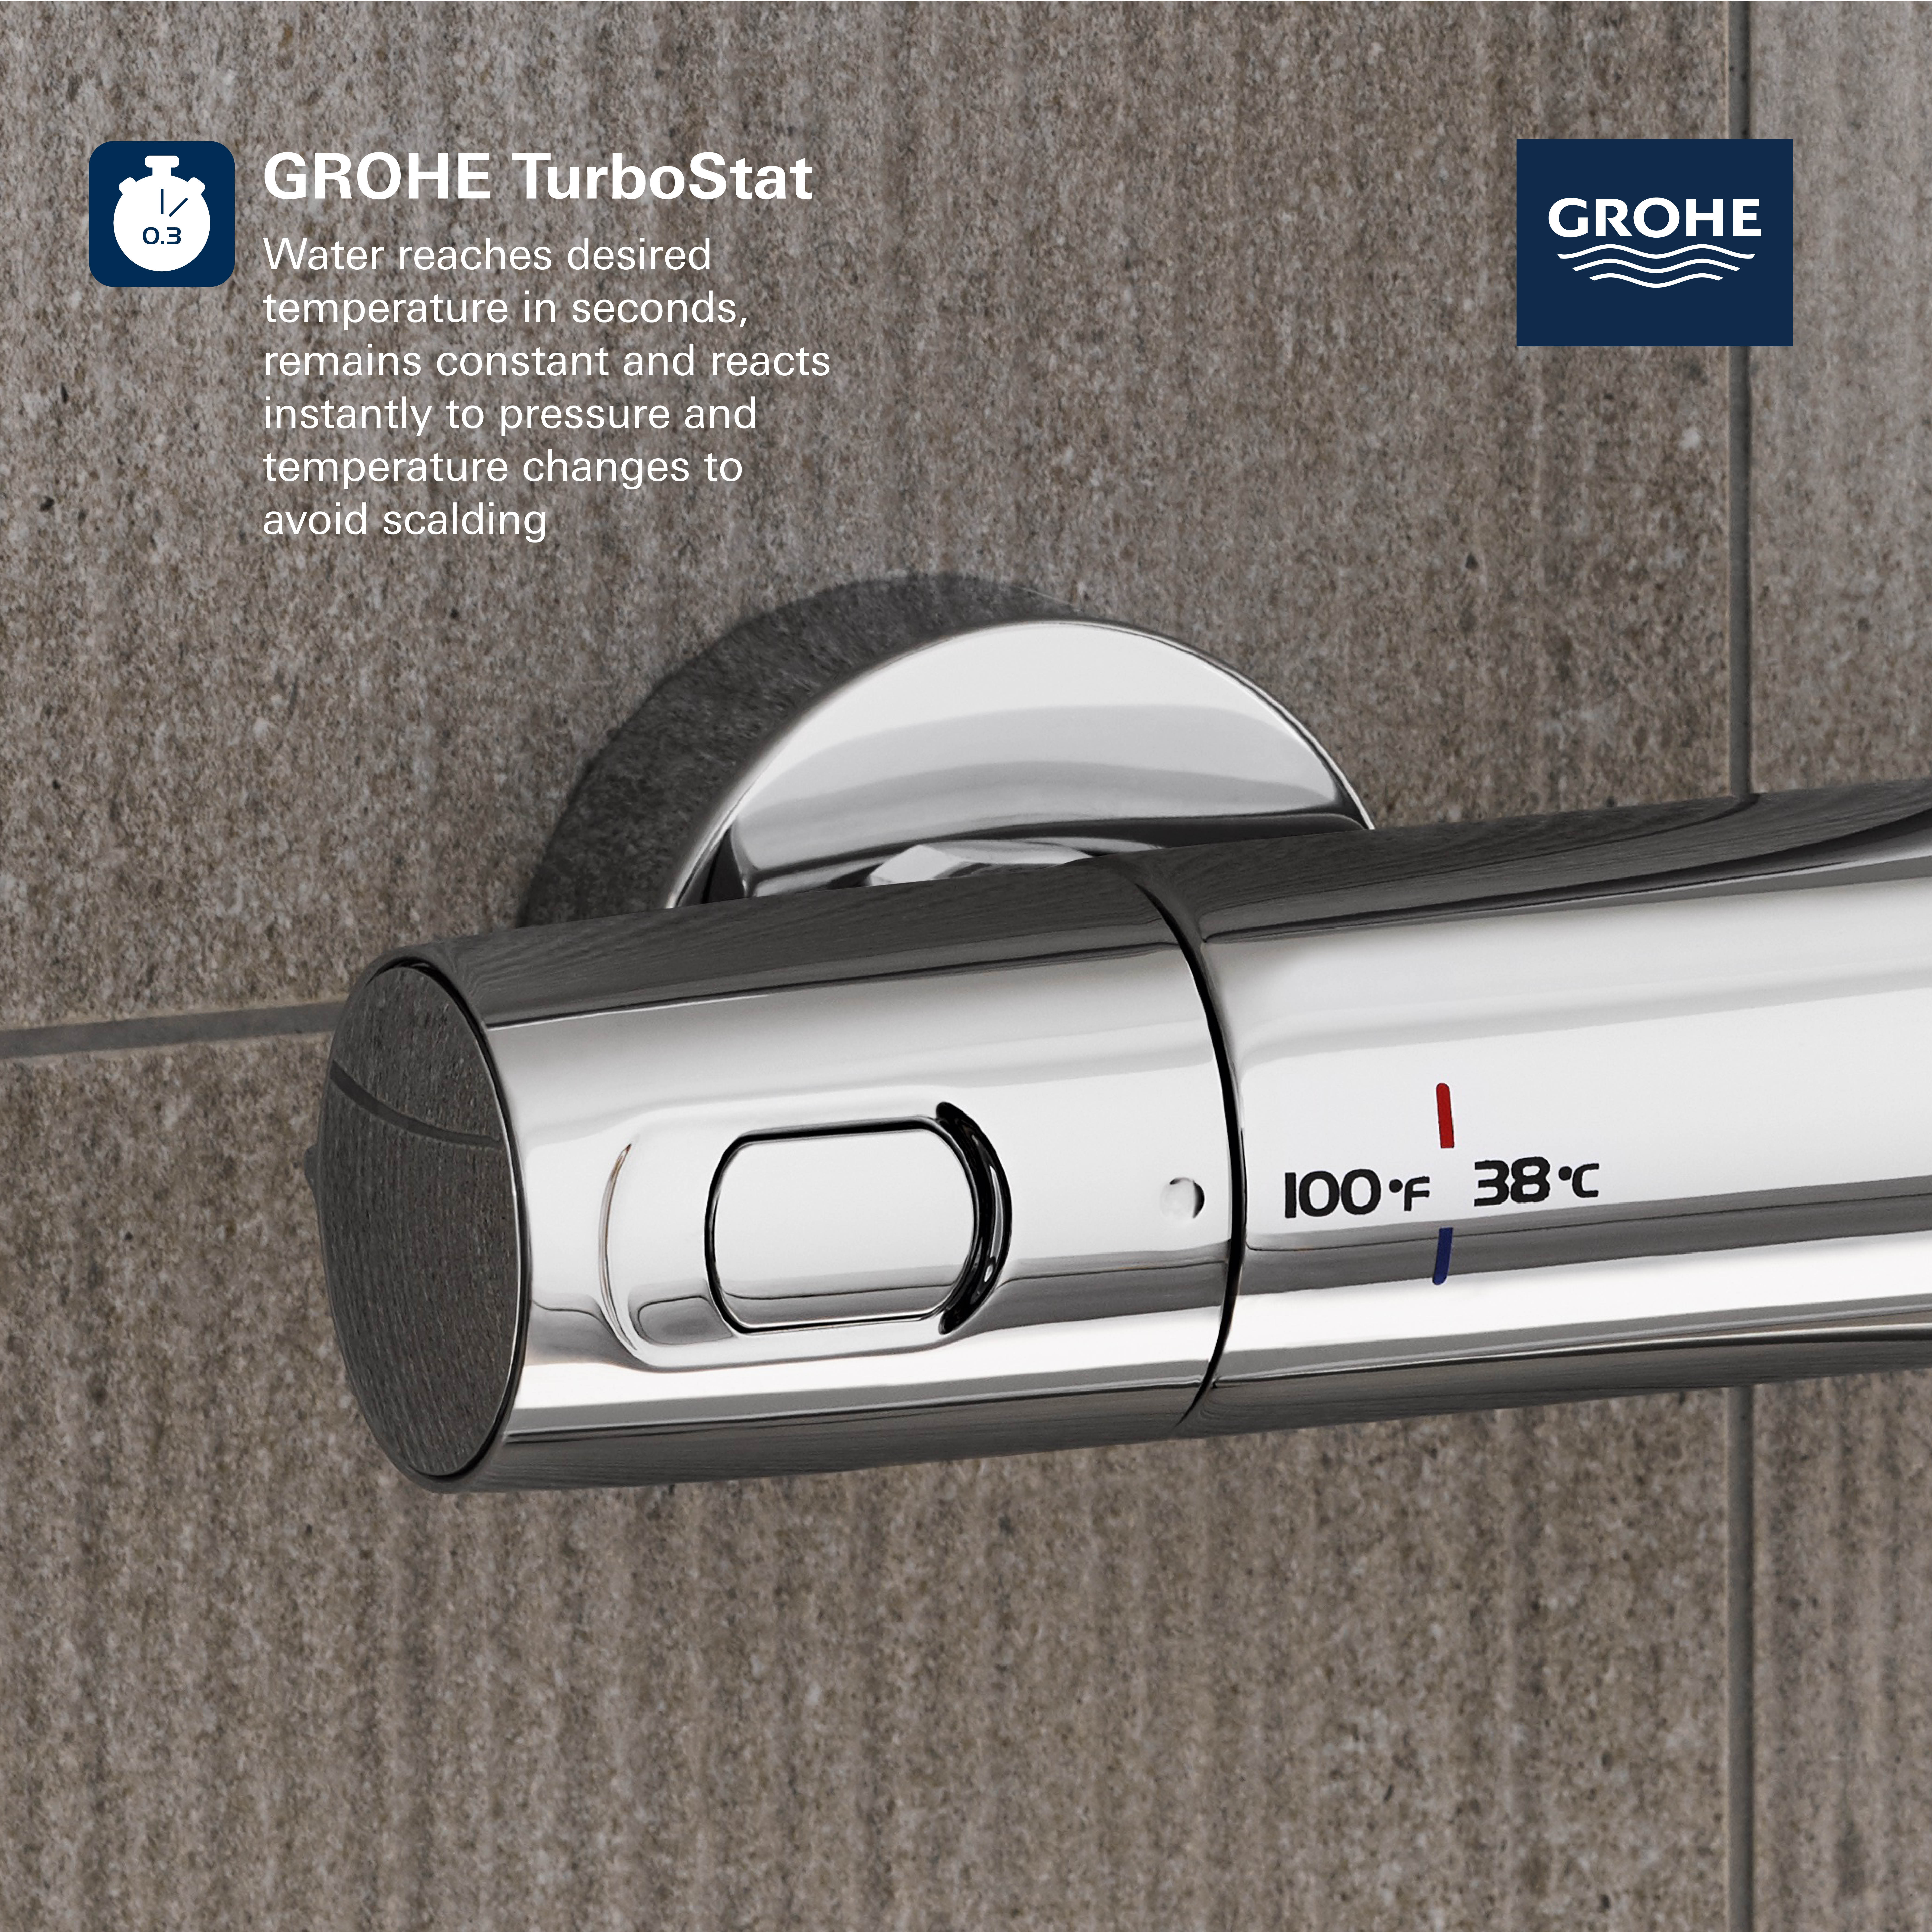 Kit de ducha termostático GROHE Precision Trend con GrohClean